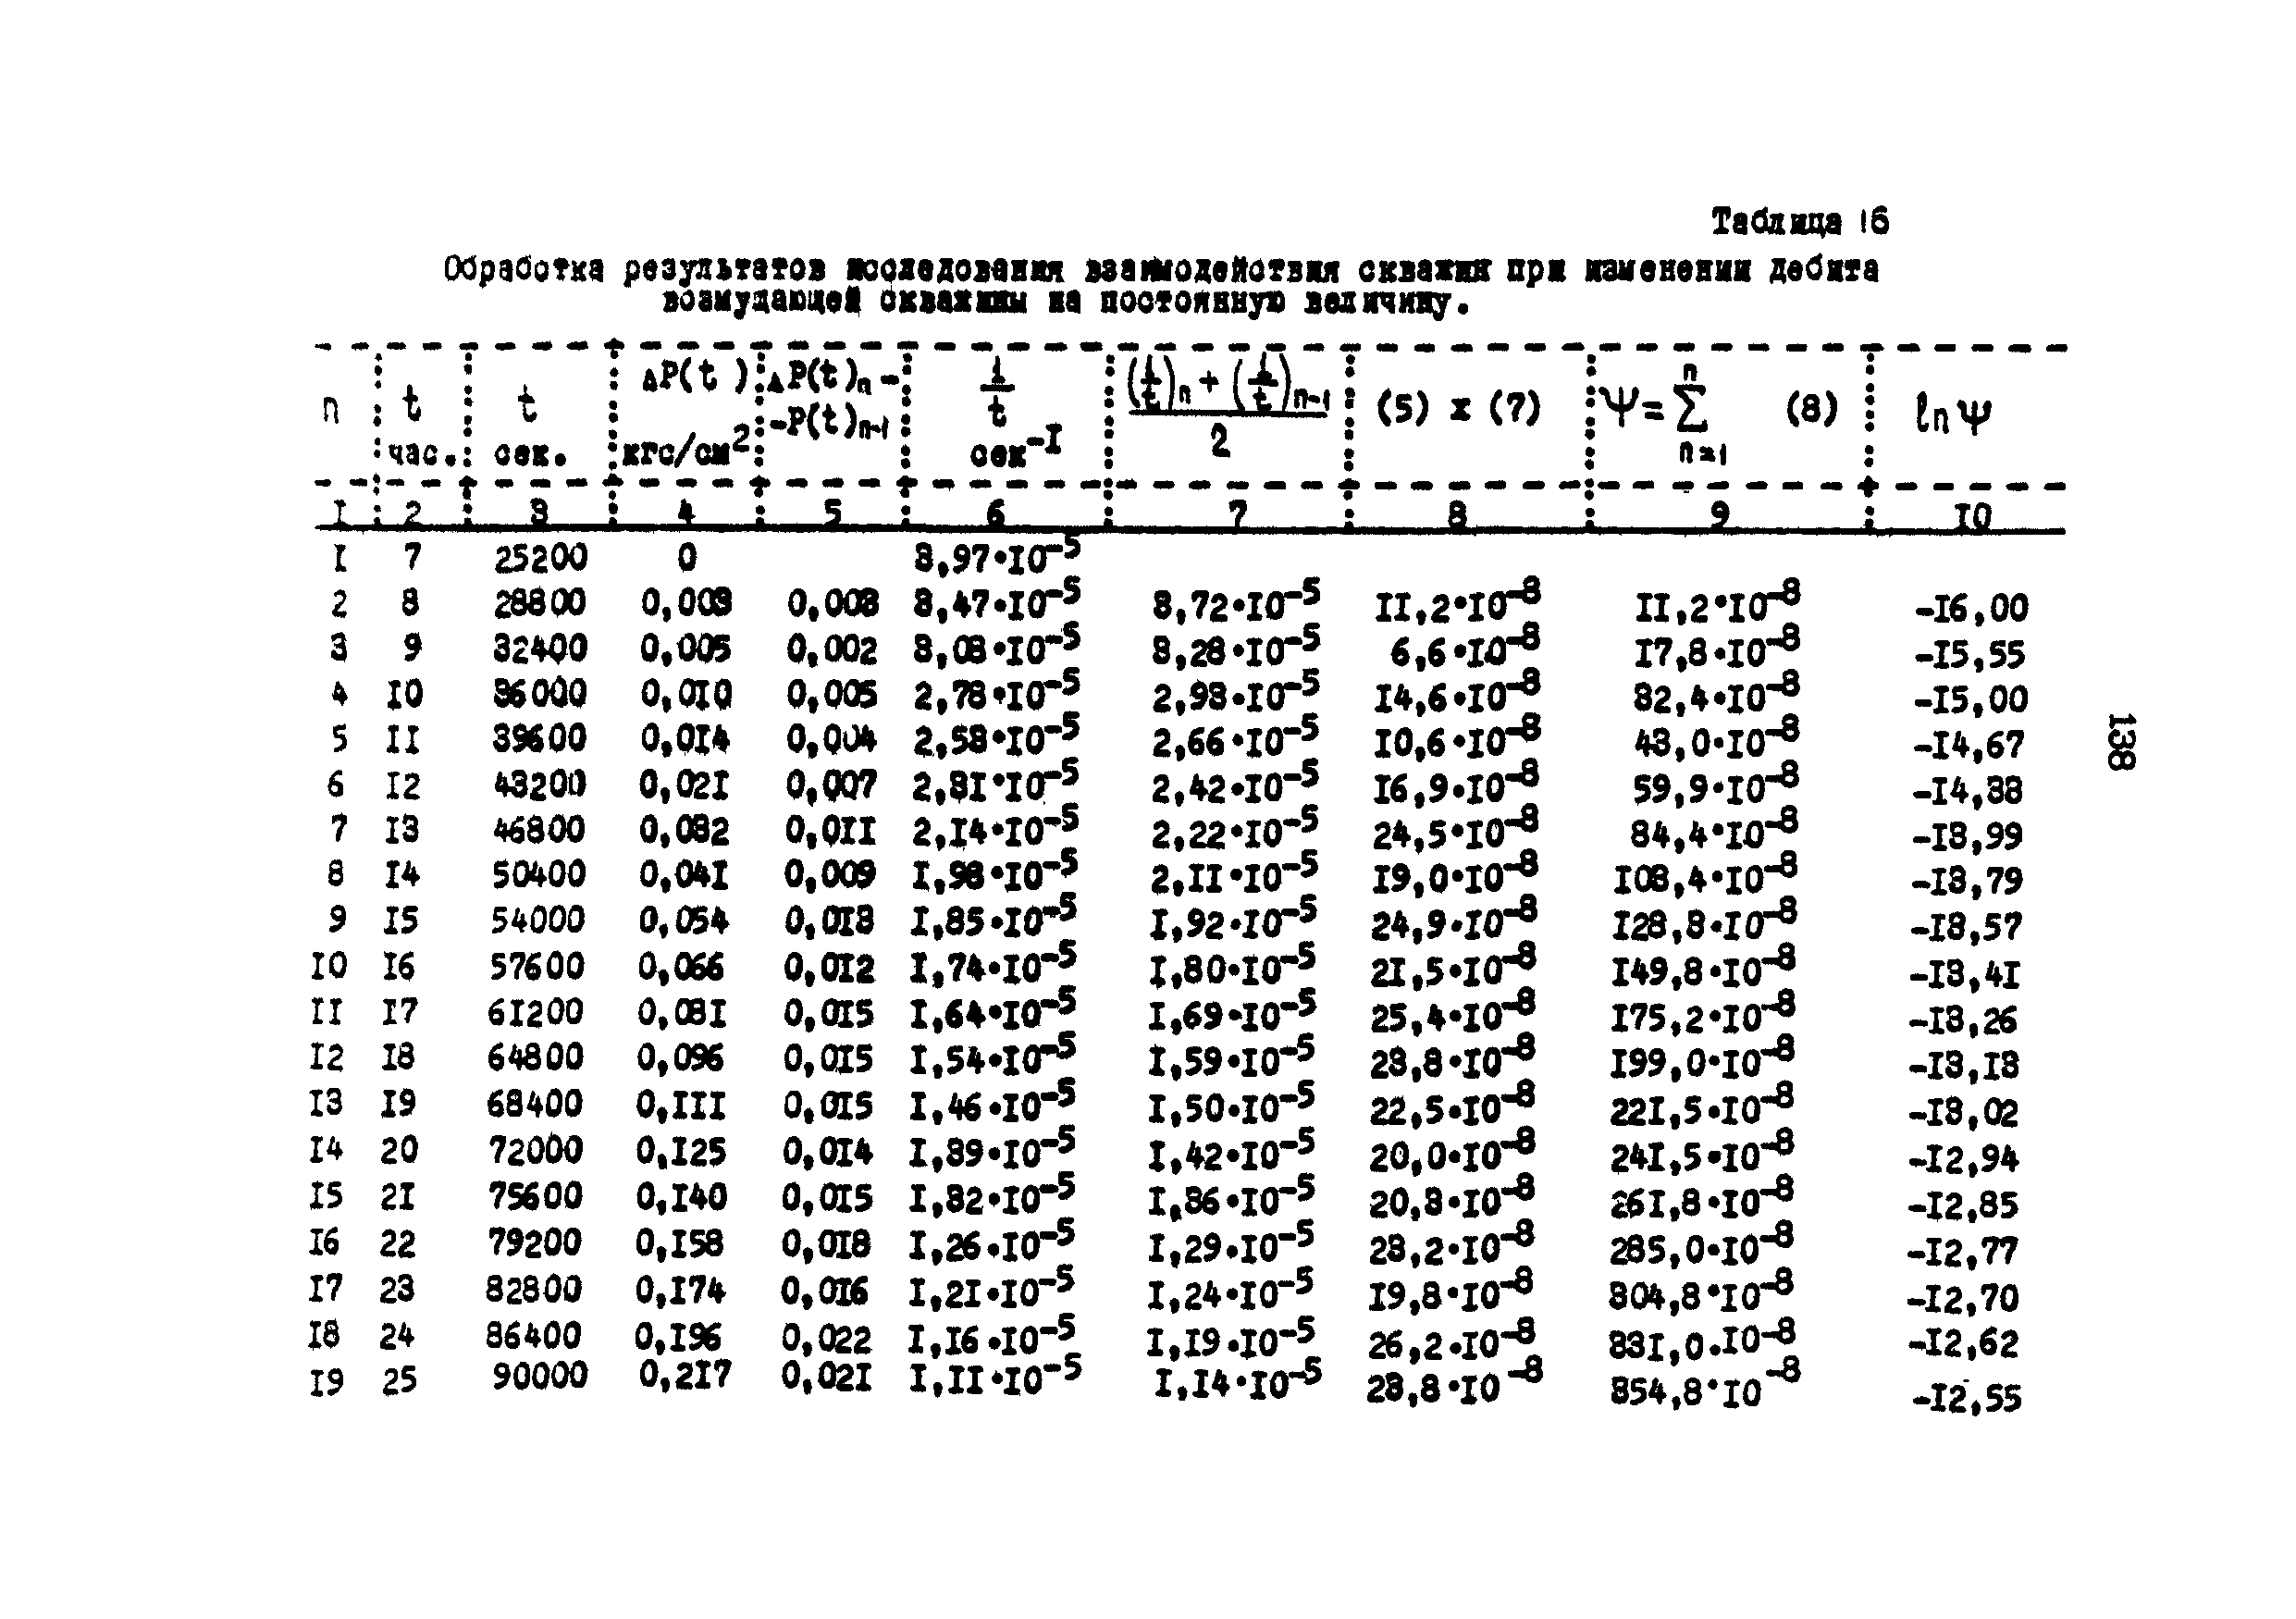 РД 39-3-593-81